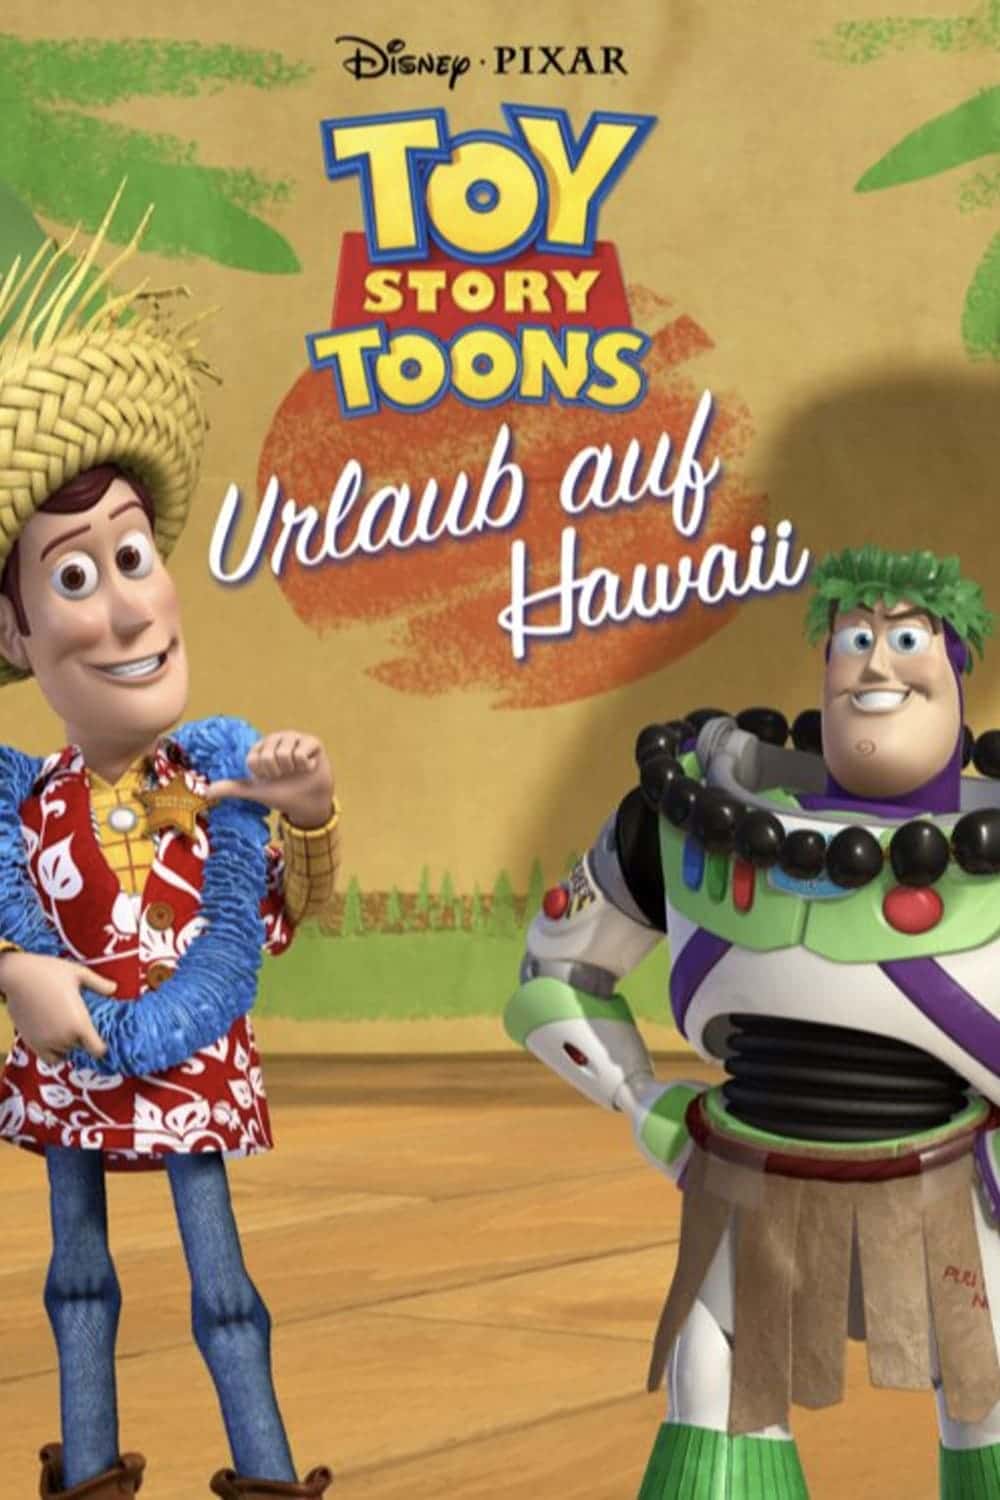 Plakat von "Toy Story Toons - Urlaub auf Hawaii"